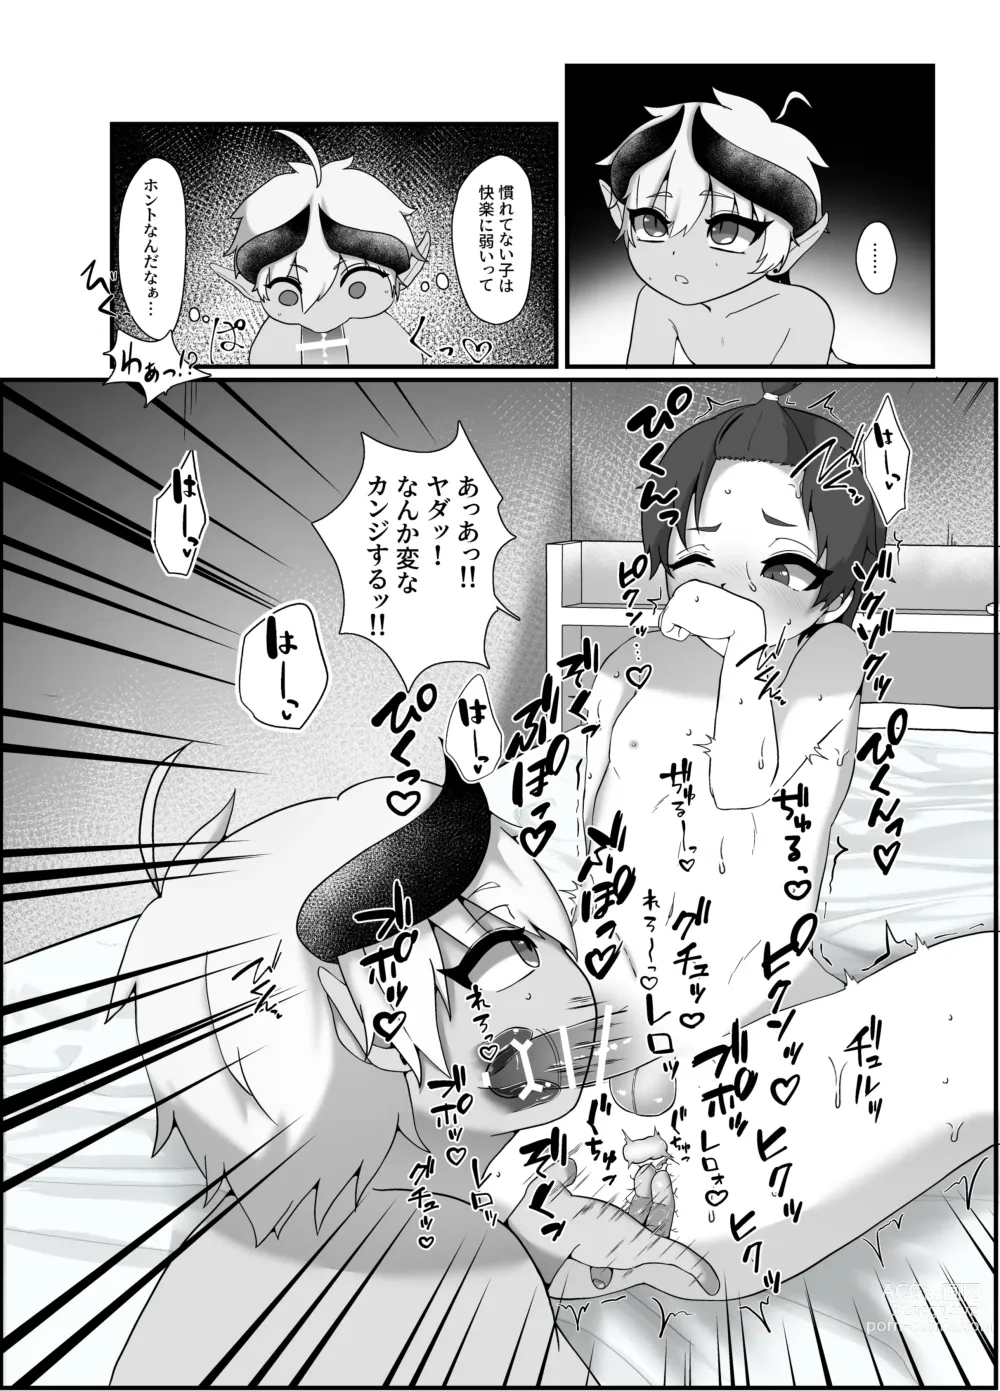 Page 11 of doujinshi 俺とお勉強しよっ!